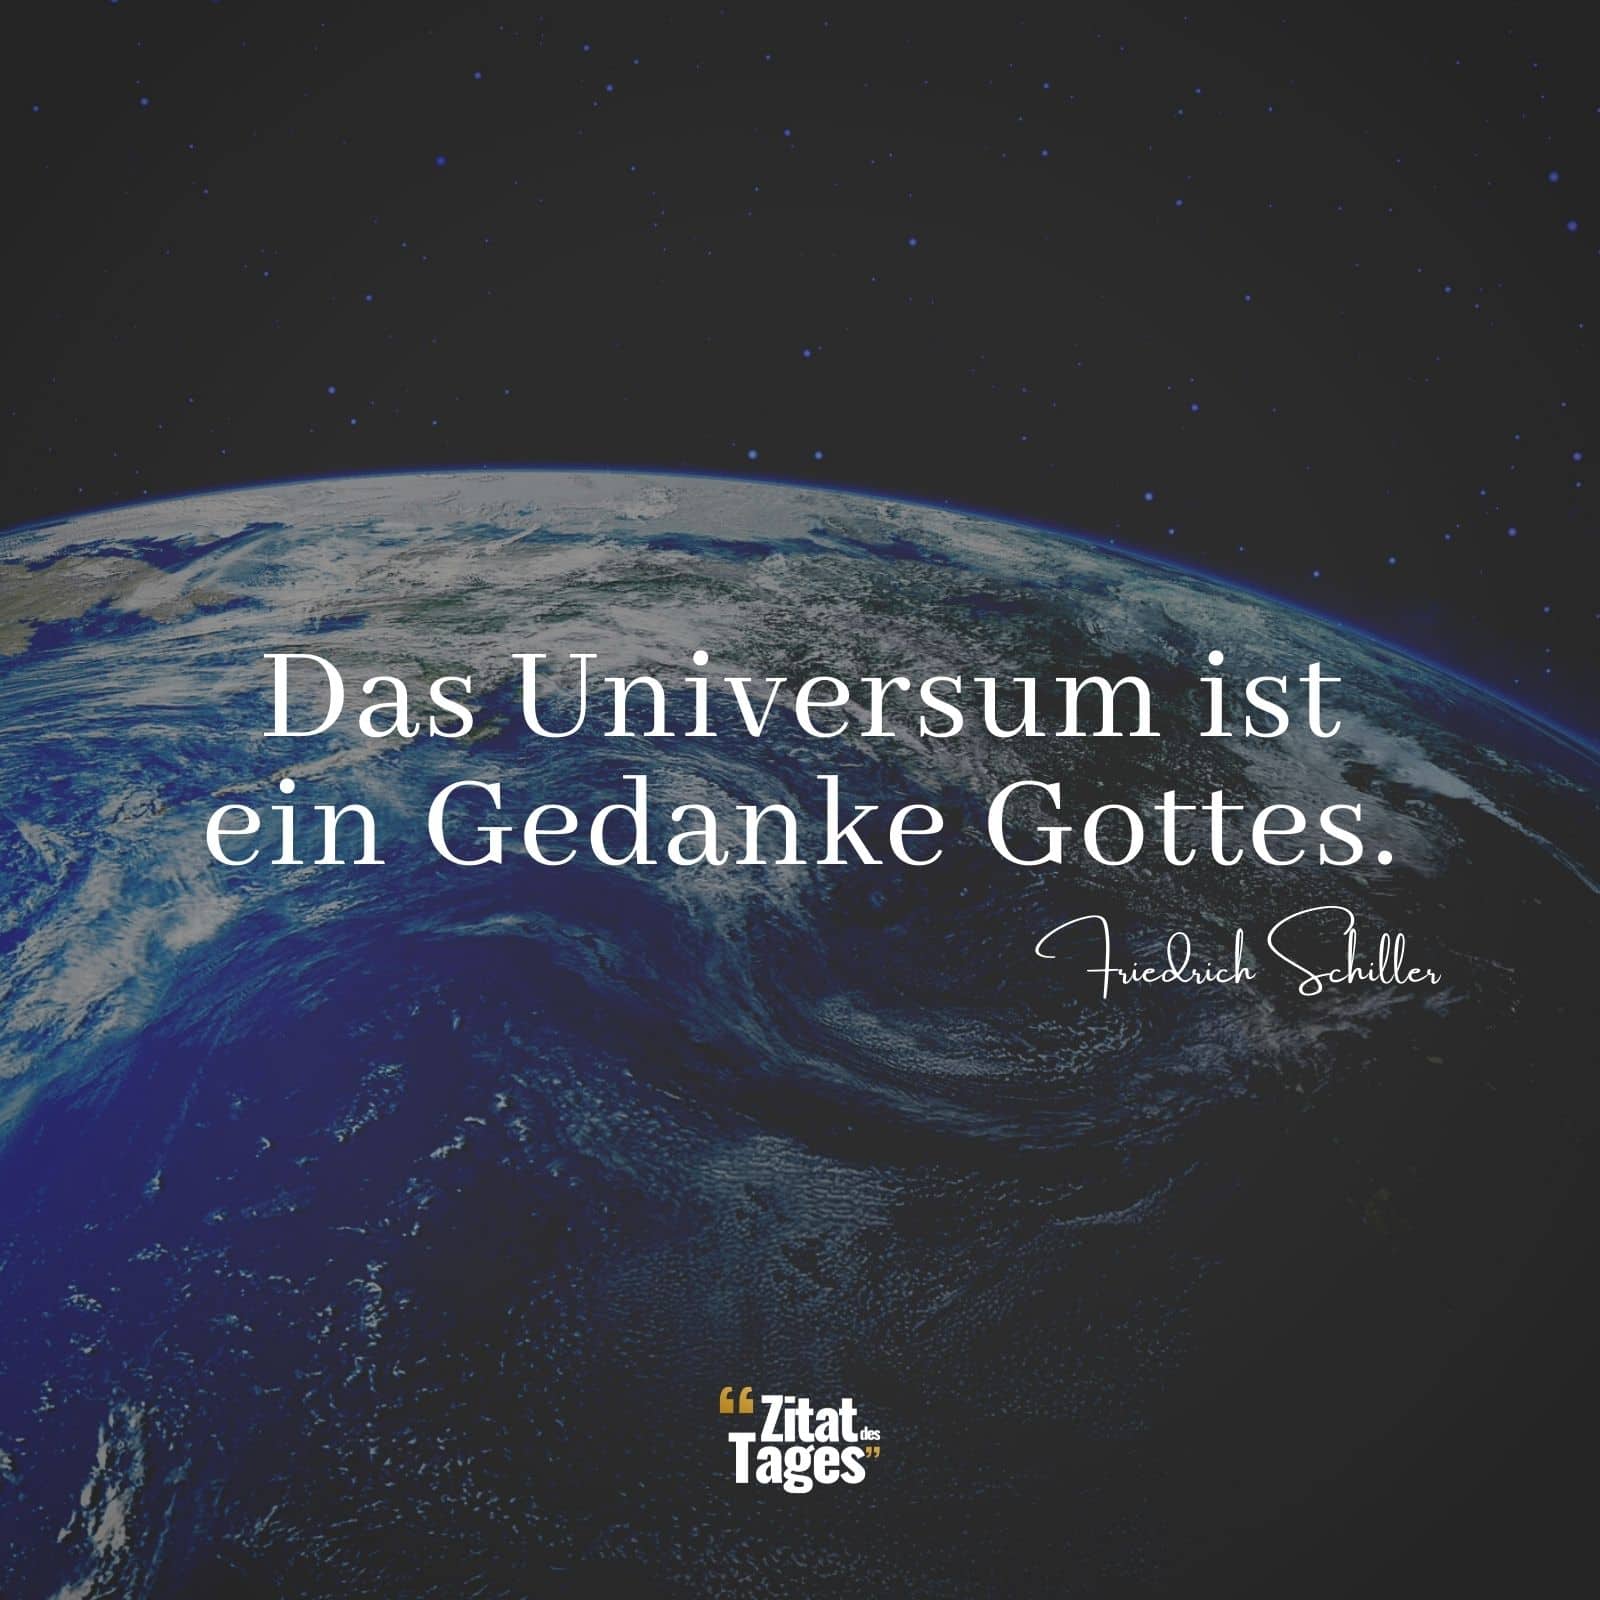 Das Universum ist ein Gedanke Gottes. - Friedrich Schiller